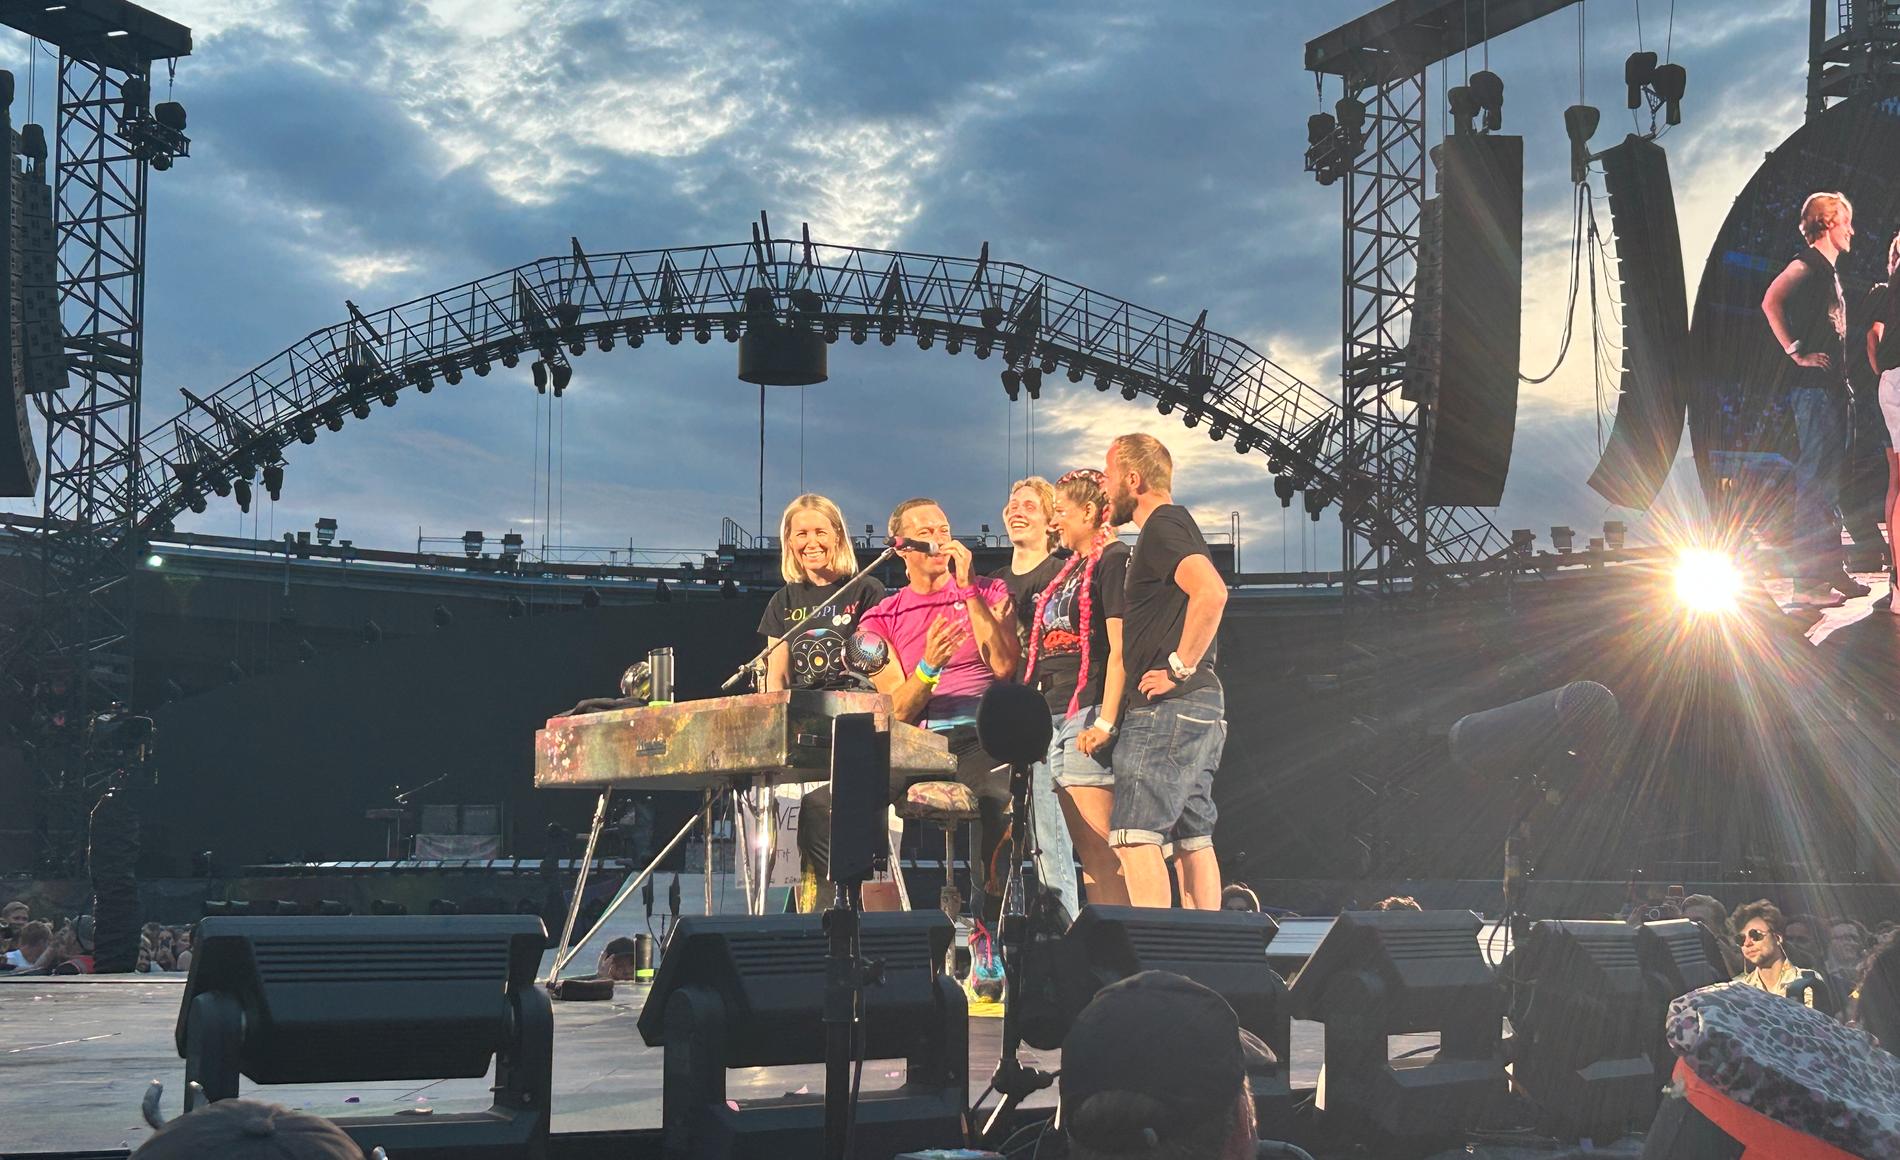 La norvegese Rita Brandens ha cantato con i Coldplay a Göteborg